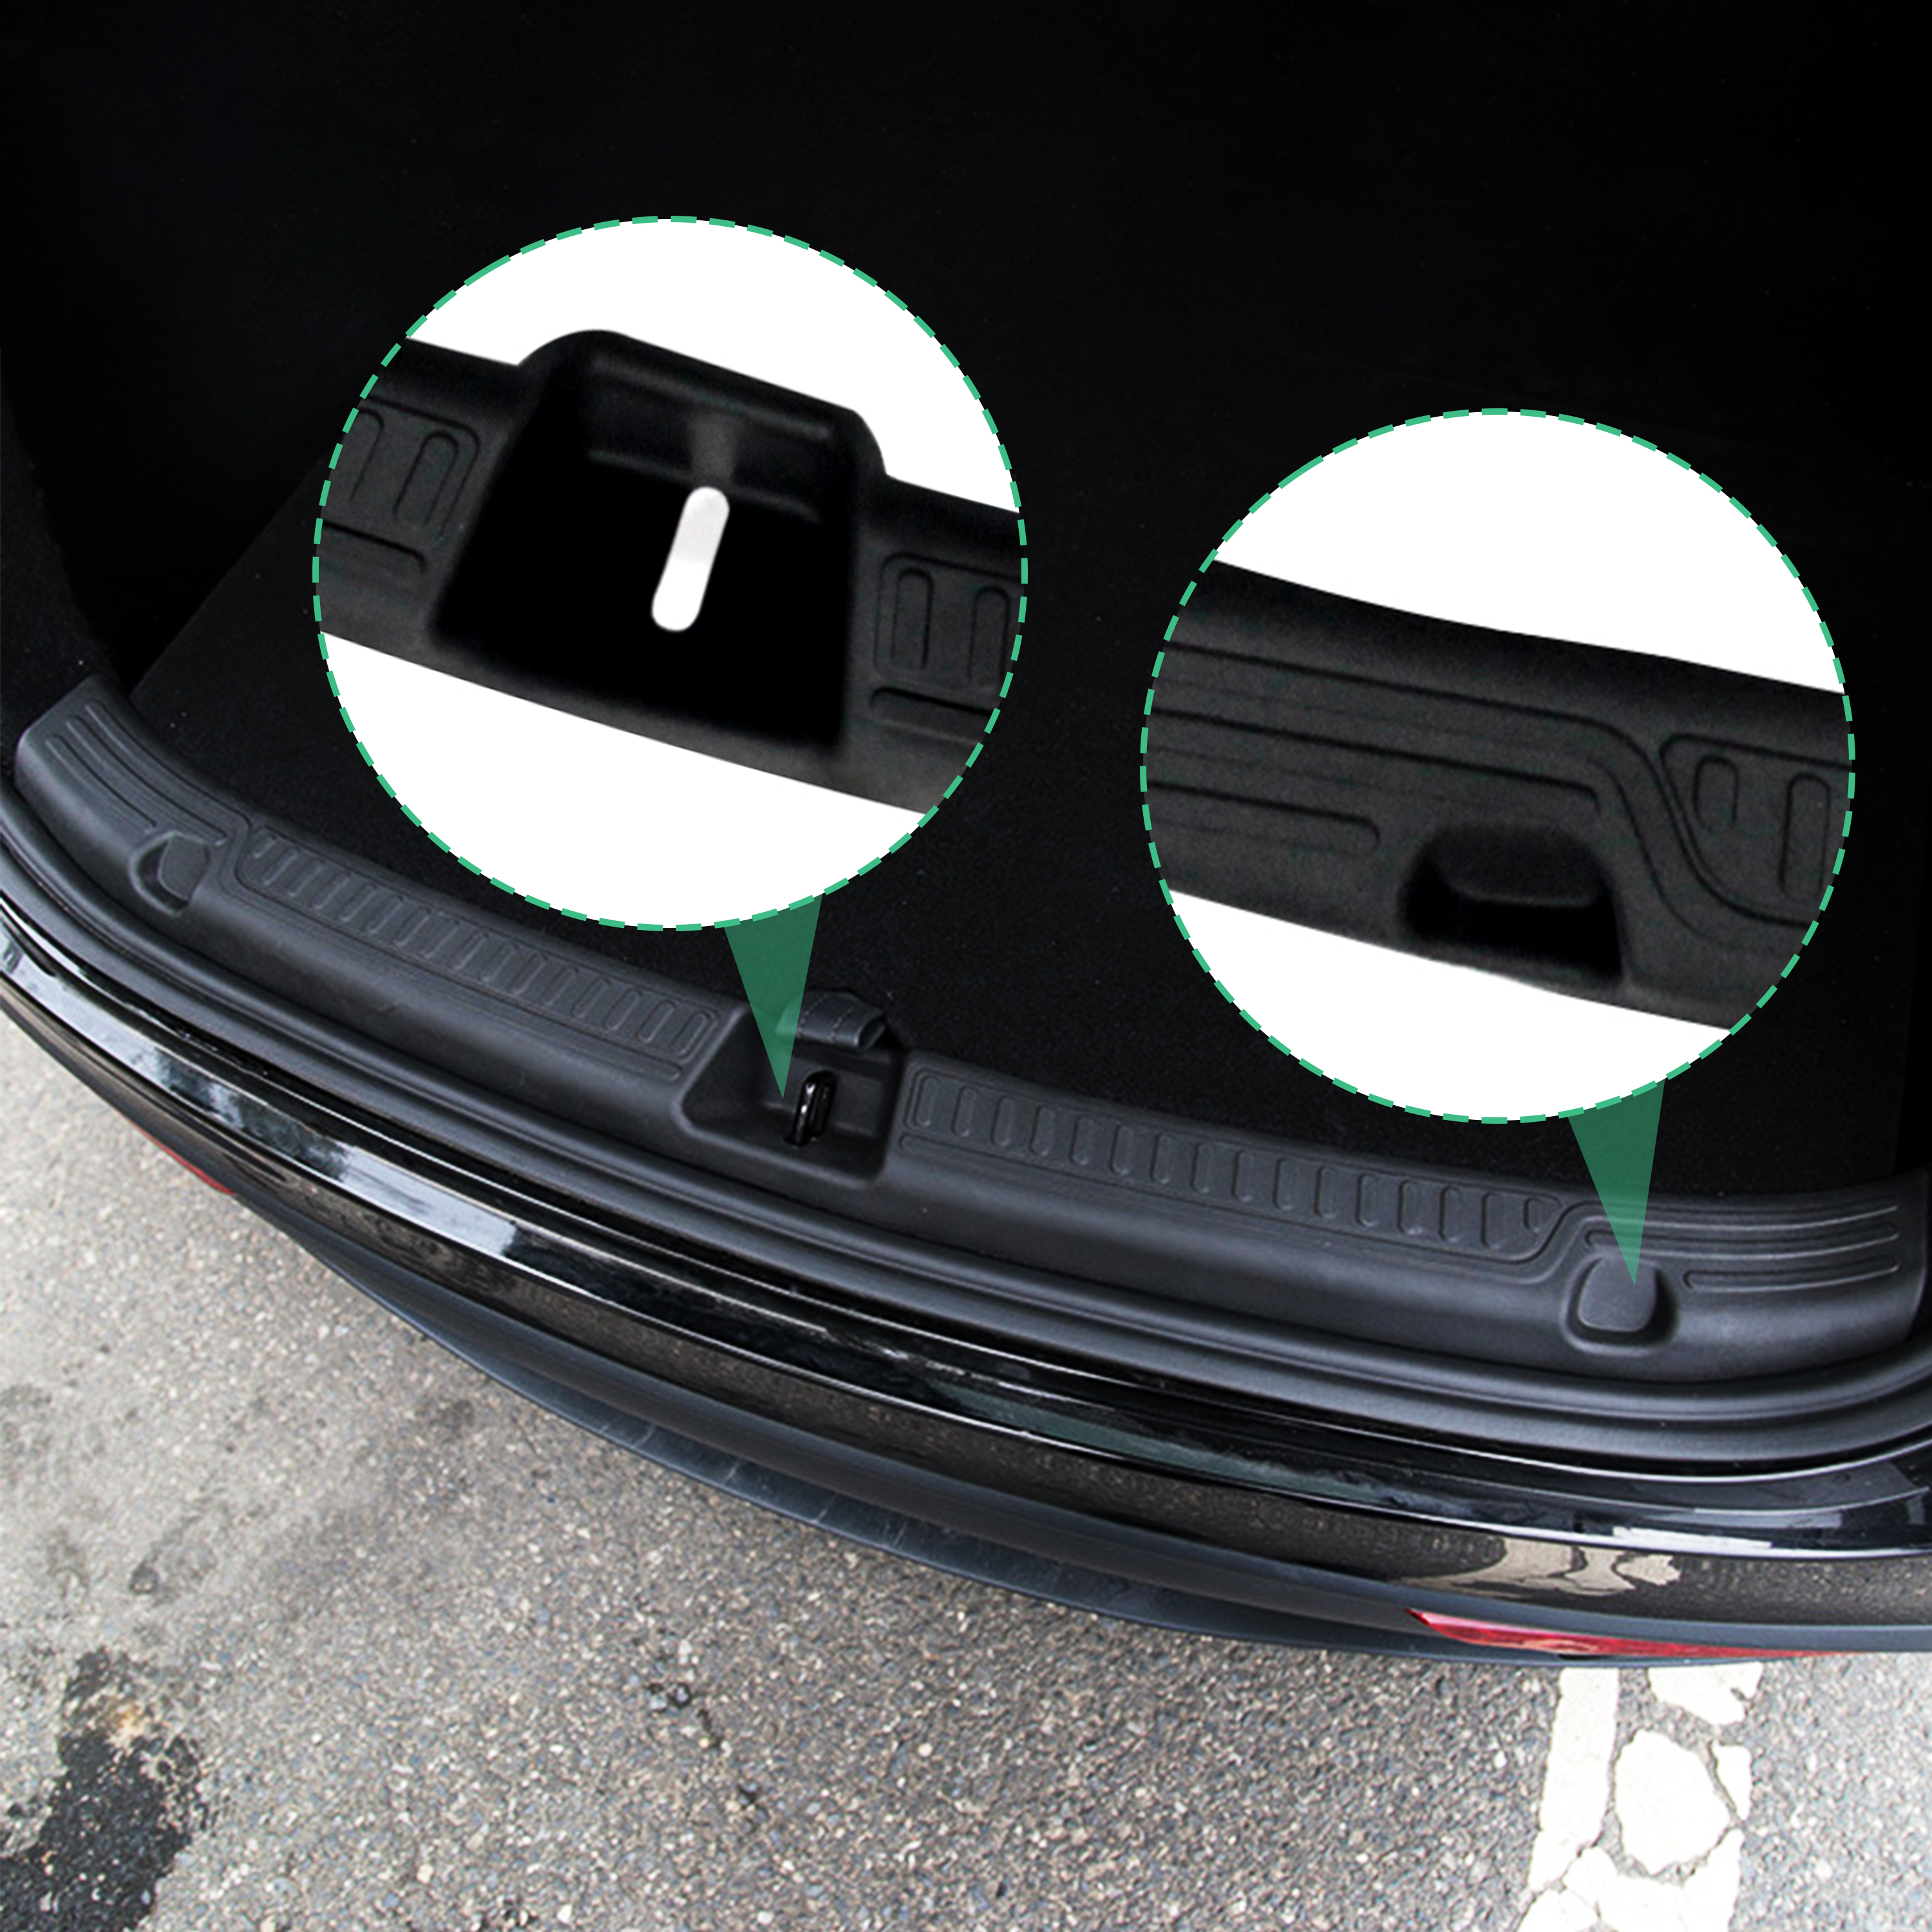 NITOYO Body Parts Rear Bumper Guard Protector Car Bumpers For Tesla Model Y bumper